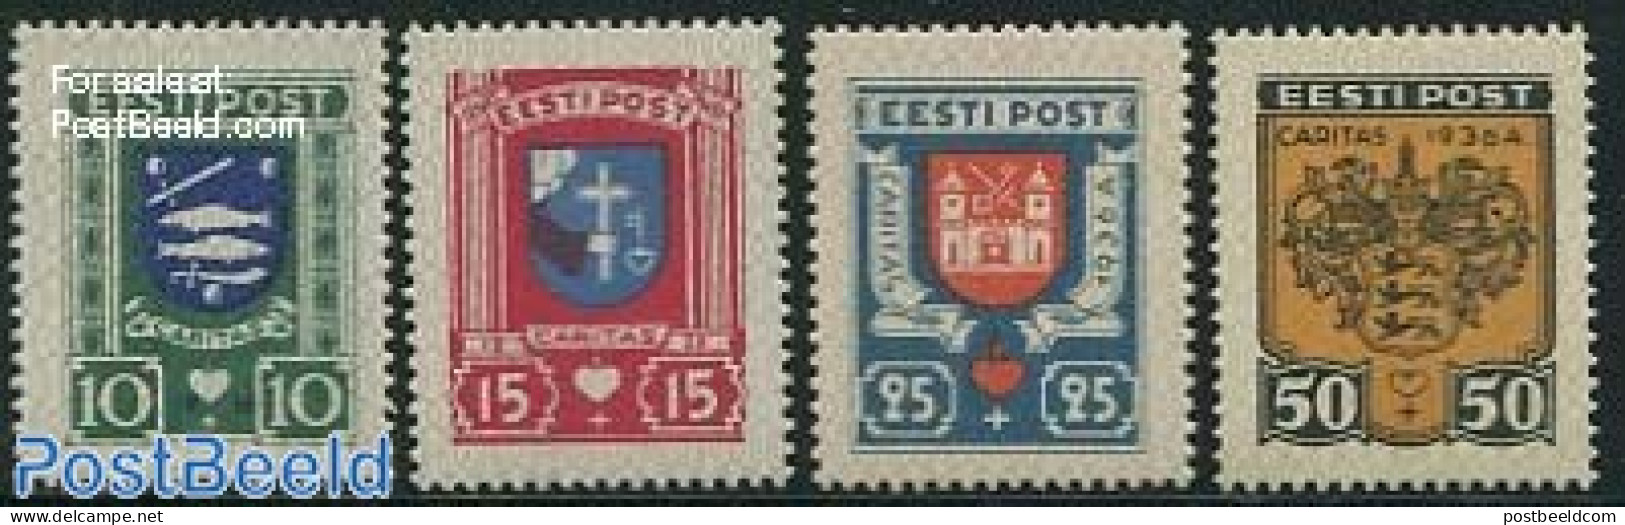 Estonia 1936 City Coat Of Arms 4v, Mint NH, History - Coat Of Arms - Estland